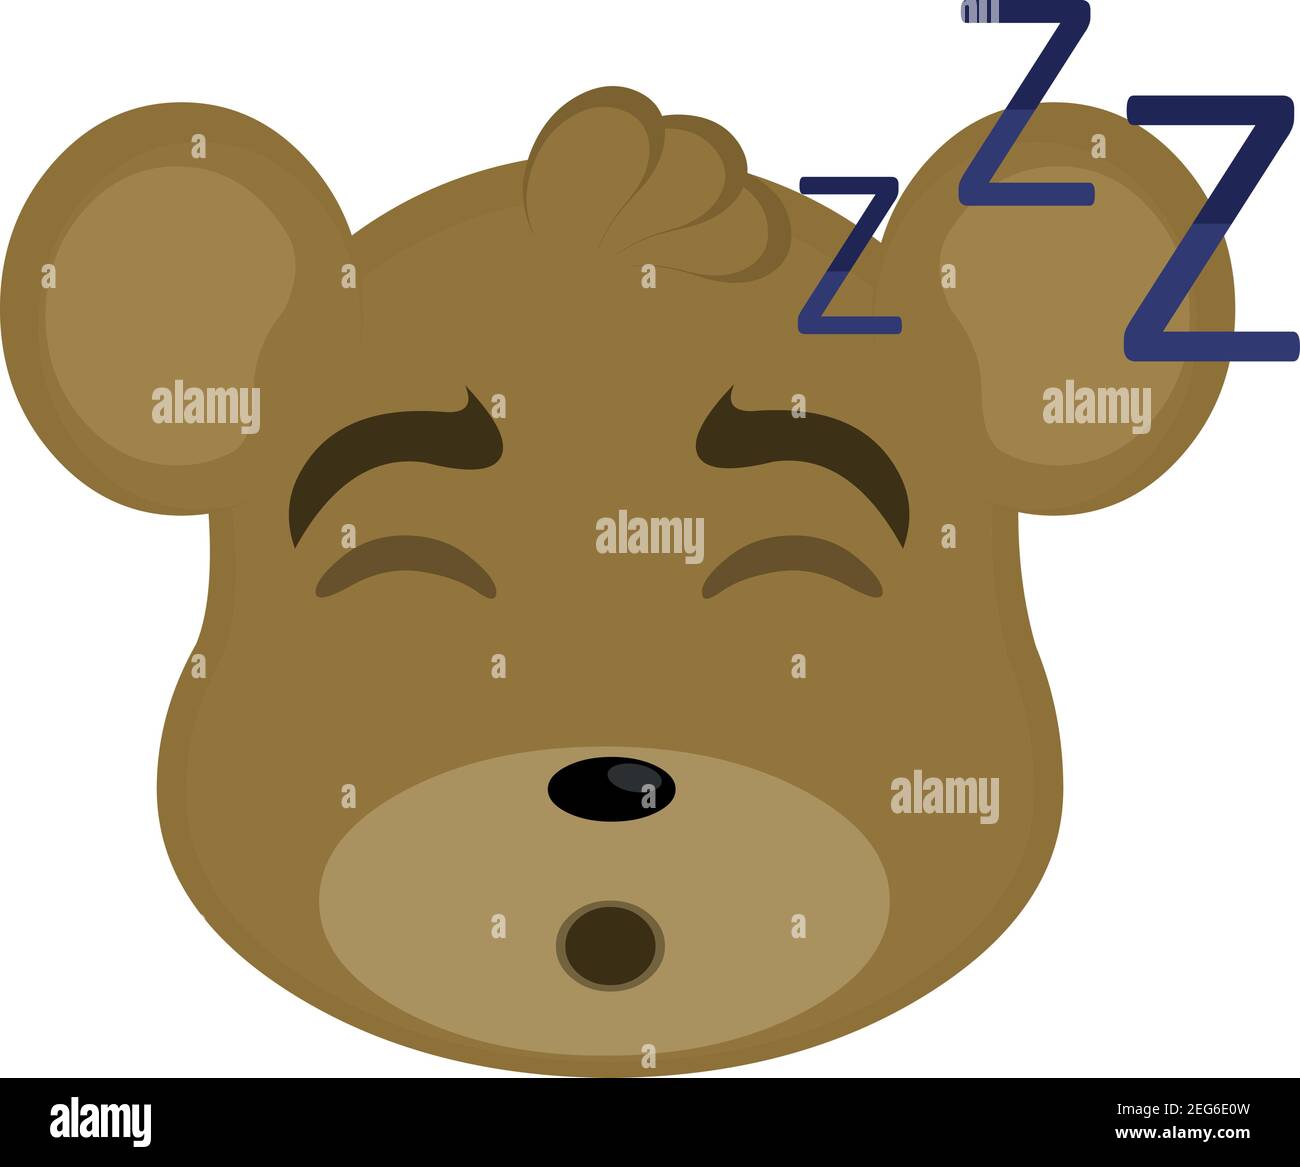 vettore emoticon illustrazione cartoon di testa di un orsacchiotto con espressione stanca e i suoi occhi chiusi e russare con la bocca aperta, dormire Illustrazione Vettoriale